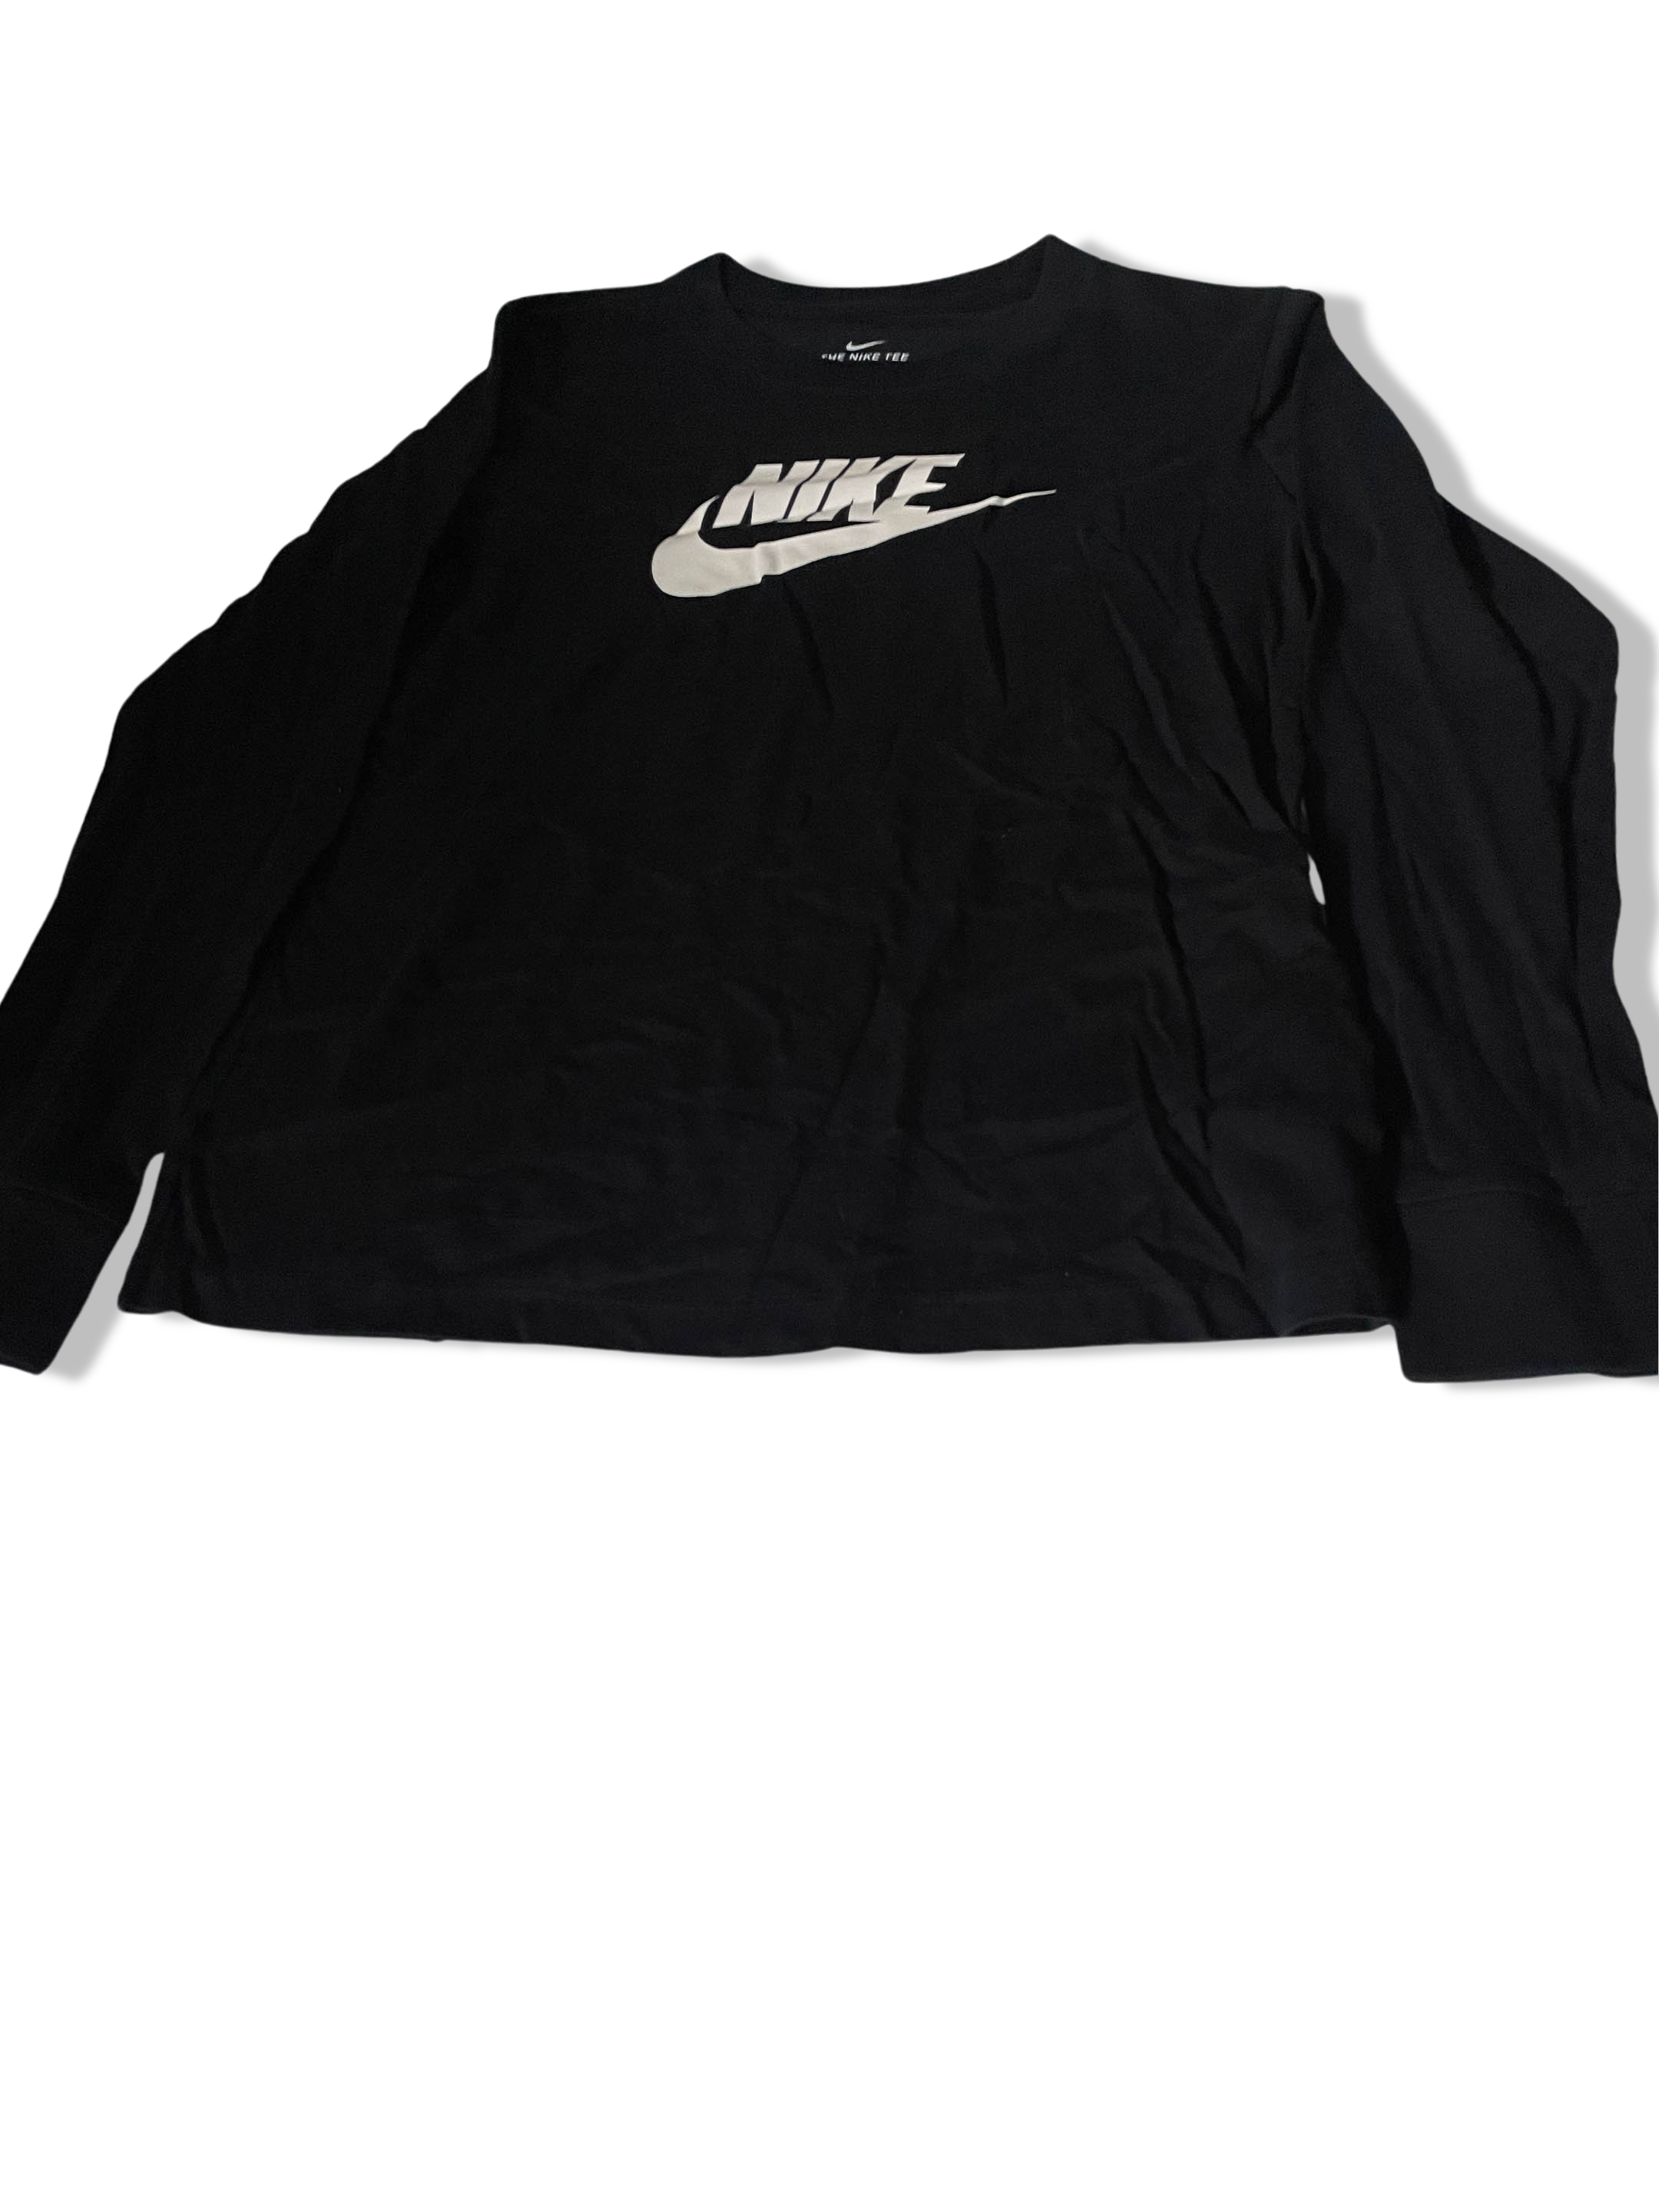 Vintage Nike big logo mens black long sleeve tees XS